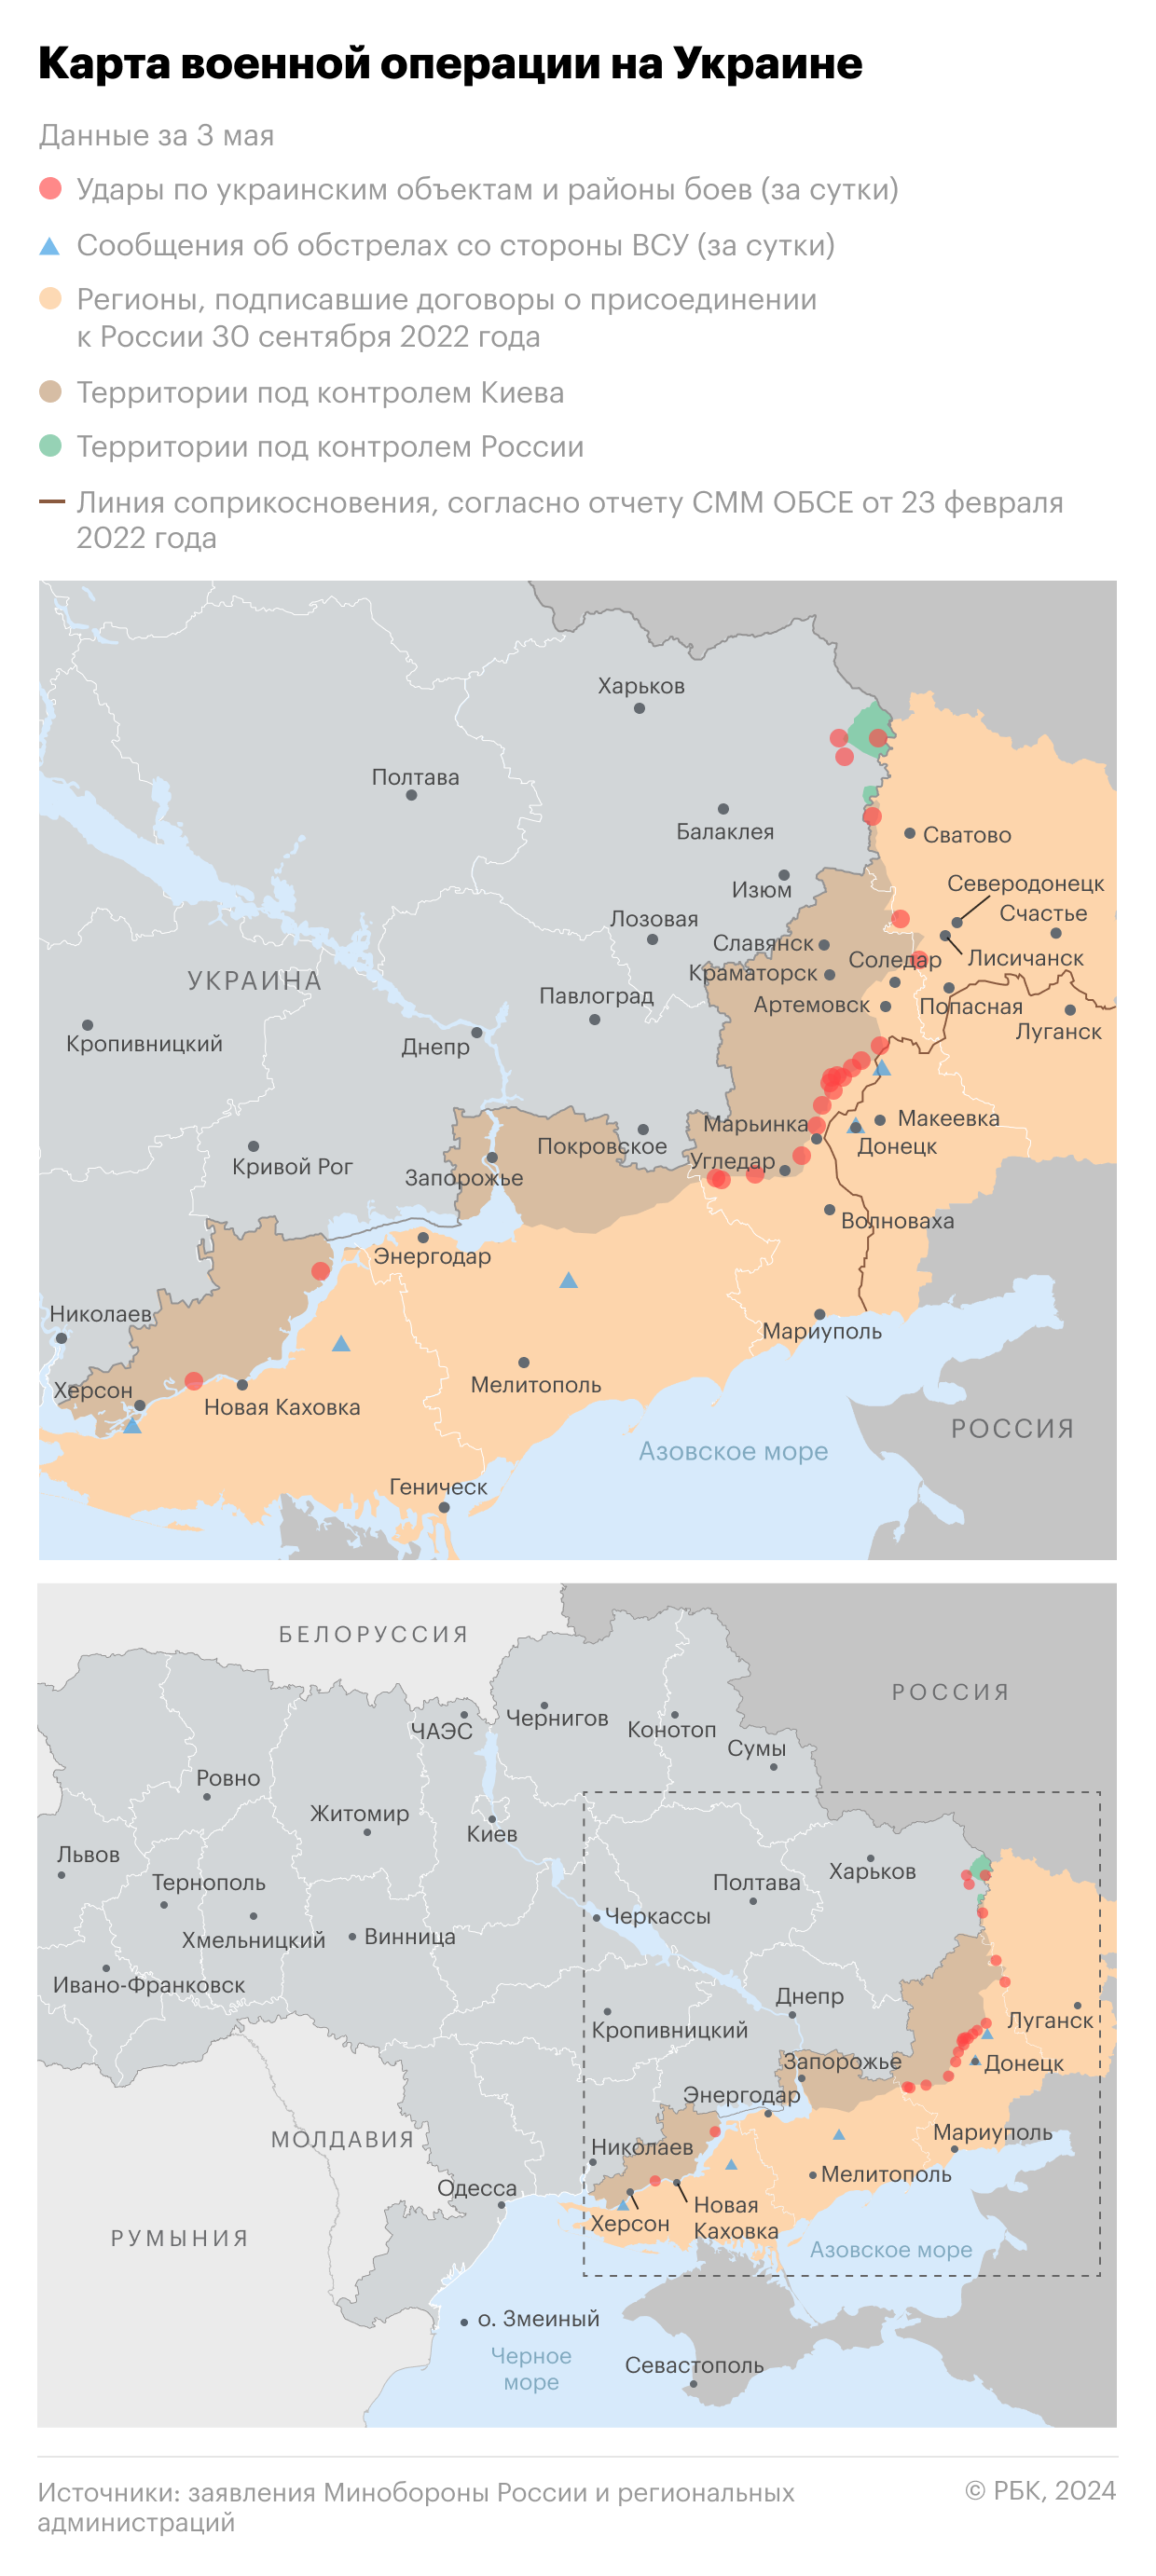 Шойгу доложил о расширении зоны контроля российских войск в ДНР